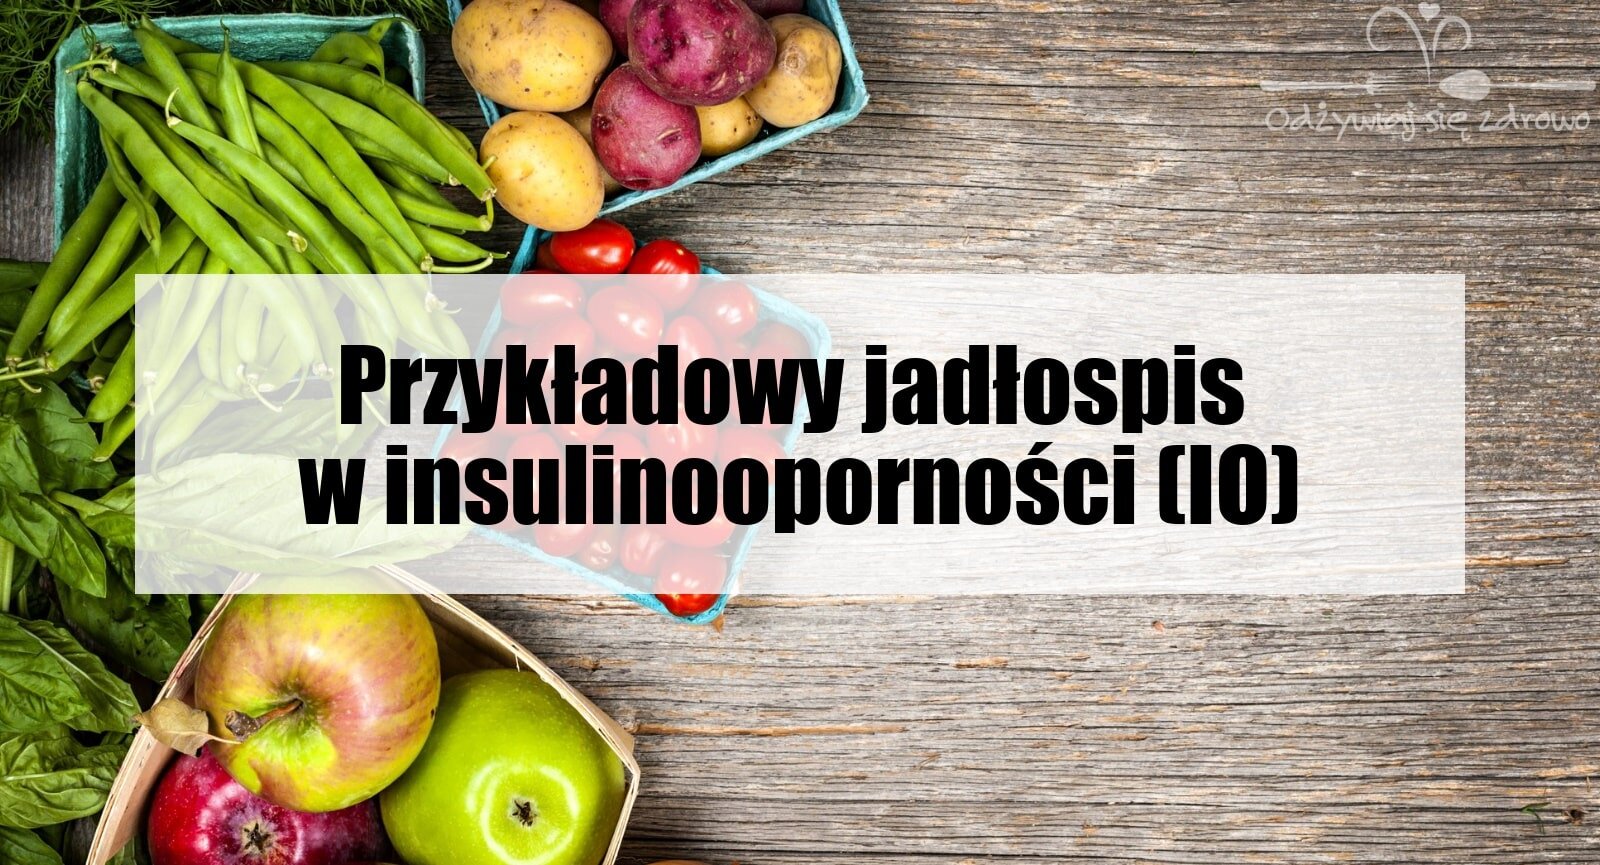 Dieta w insulinooporności (IO) - przykładowy jadłospis - banner